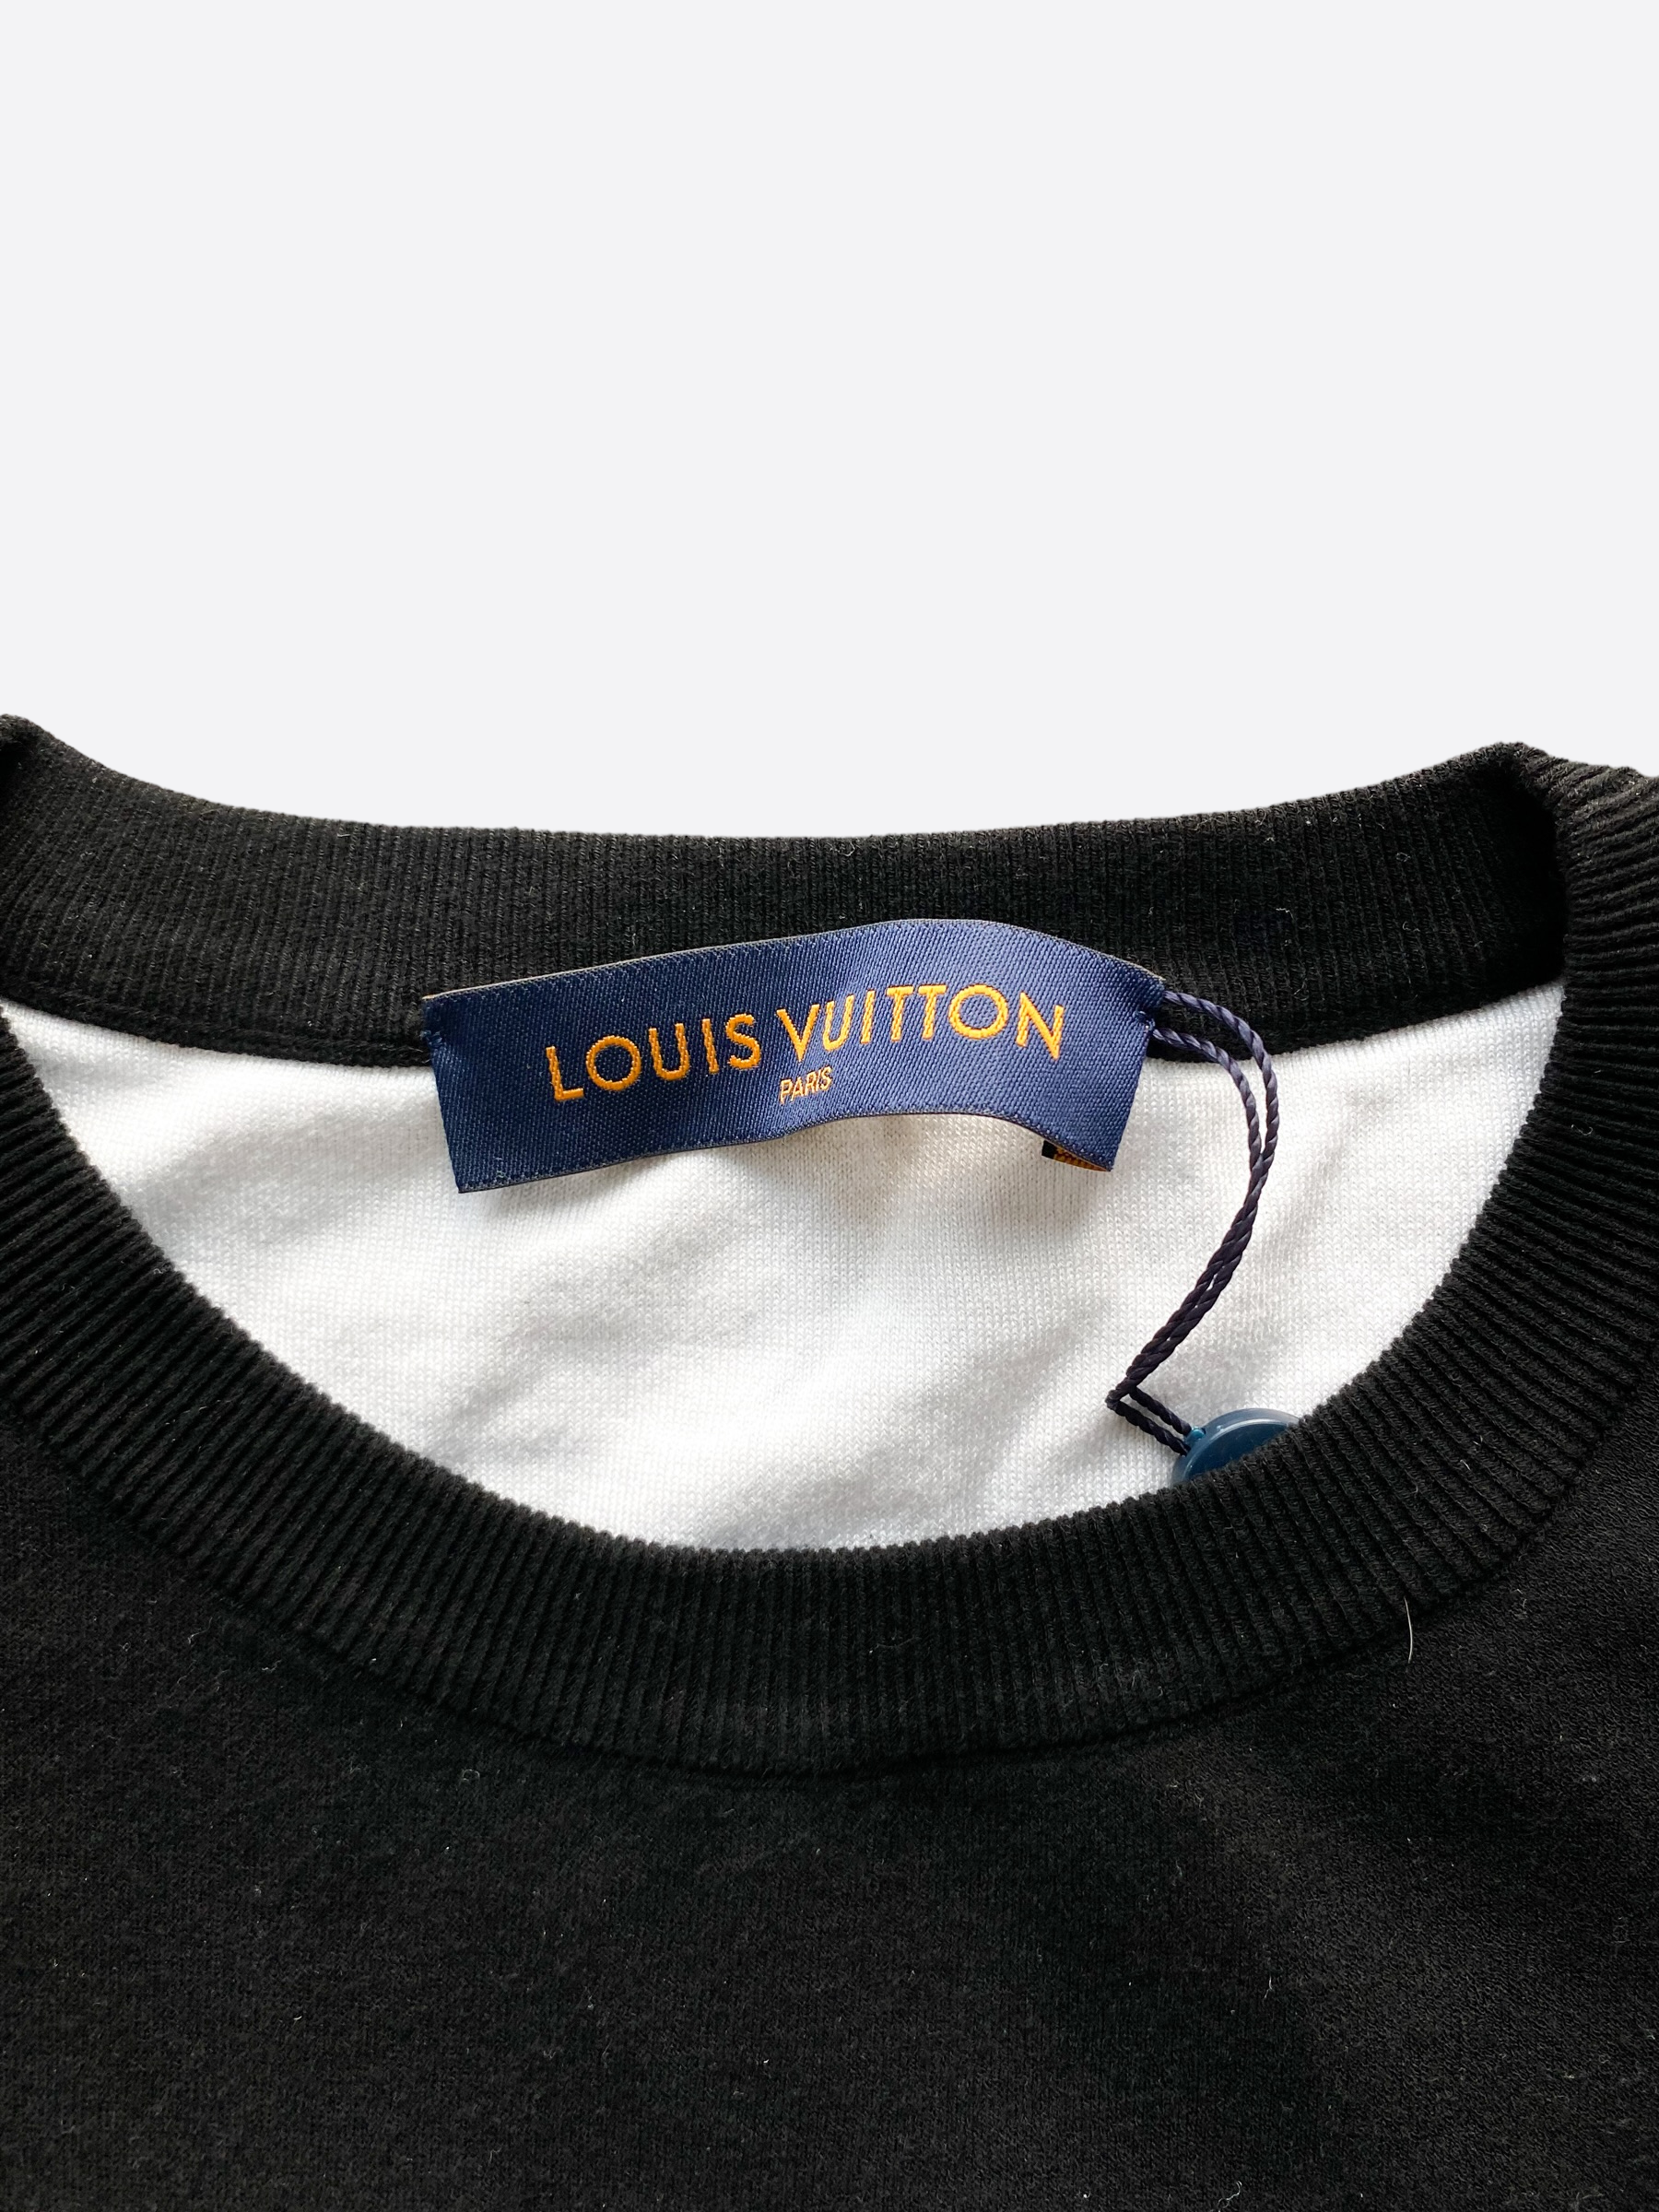 Louis Vuitton 2054 Intarsia Printed Tee – The Luxury Shopper